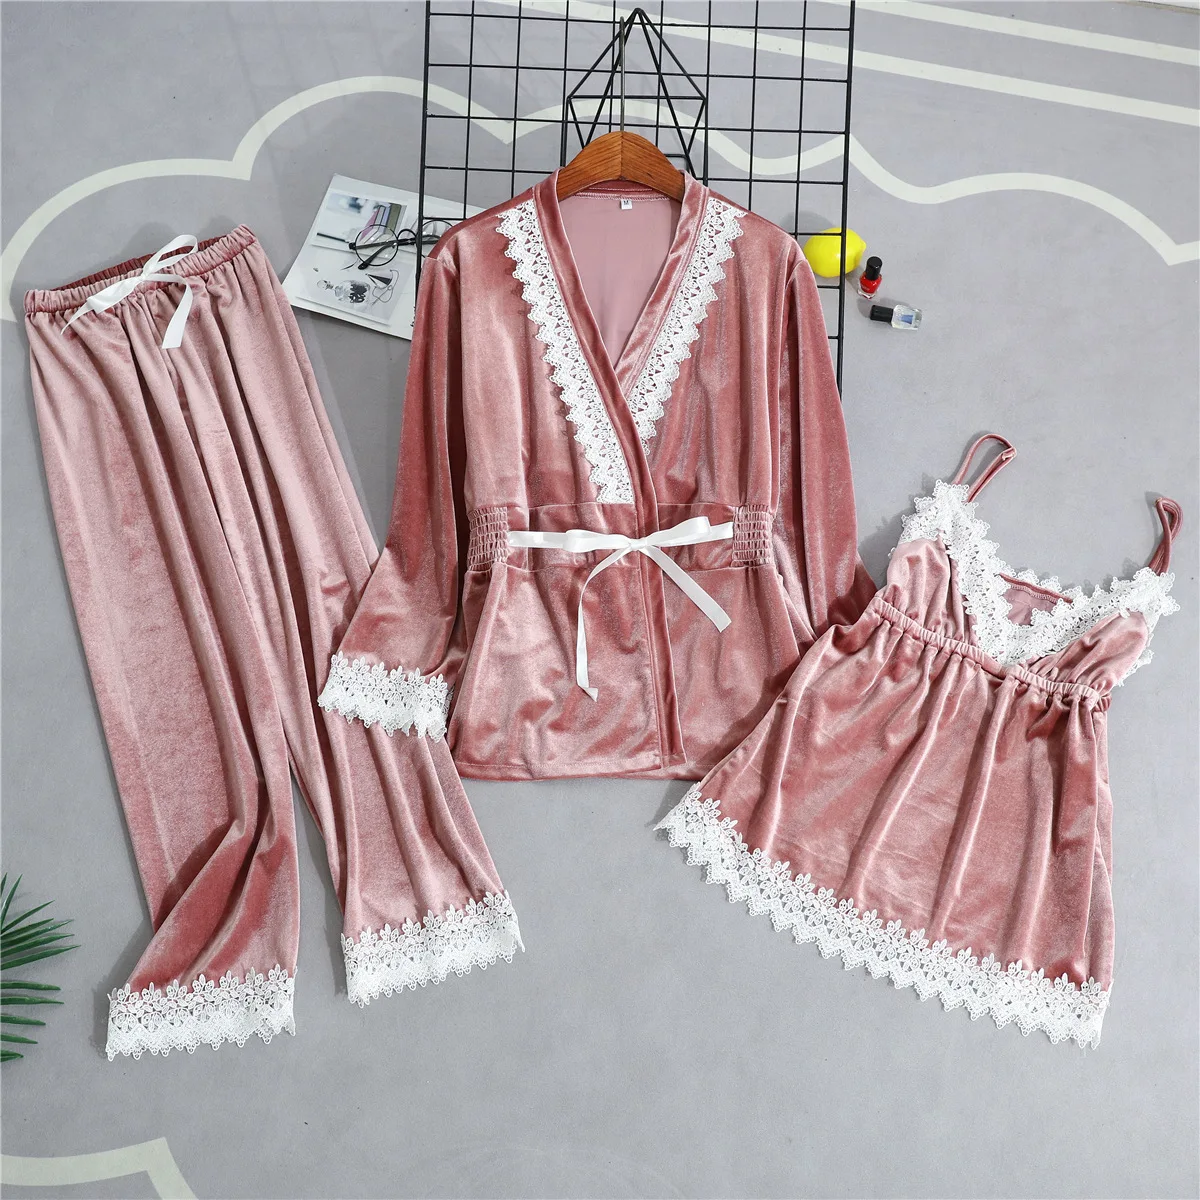 Queenral, 3 шт., зимний теплый пижамный комплект для женщин, сексуальная пижама, одежда для сна для женщин, ночной халат, нижнее белье, M, L, XL, домашняя одежда, пижама